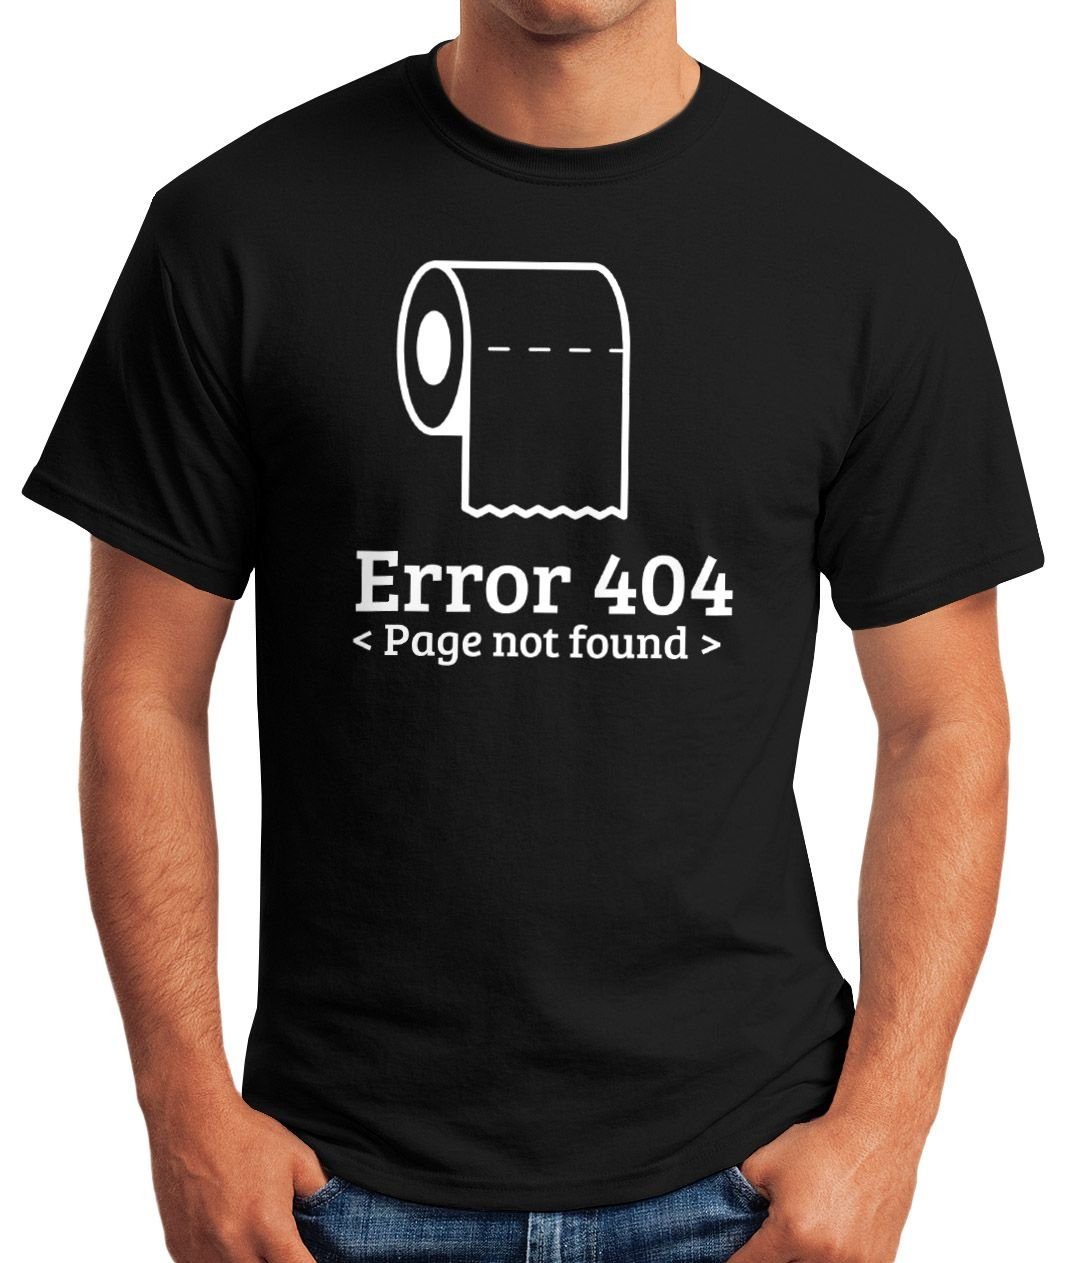 Nerd mit Parodie MoonWorks® Klopapier Geek Coder Sprüche 404 Print-Shirt lustige Error T-Shirt Herren MoonWorks Hamsterkäufe Aufdruck Print